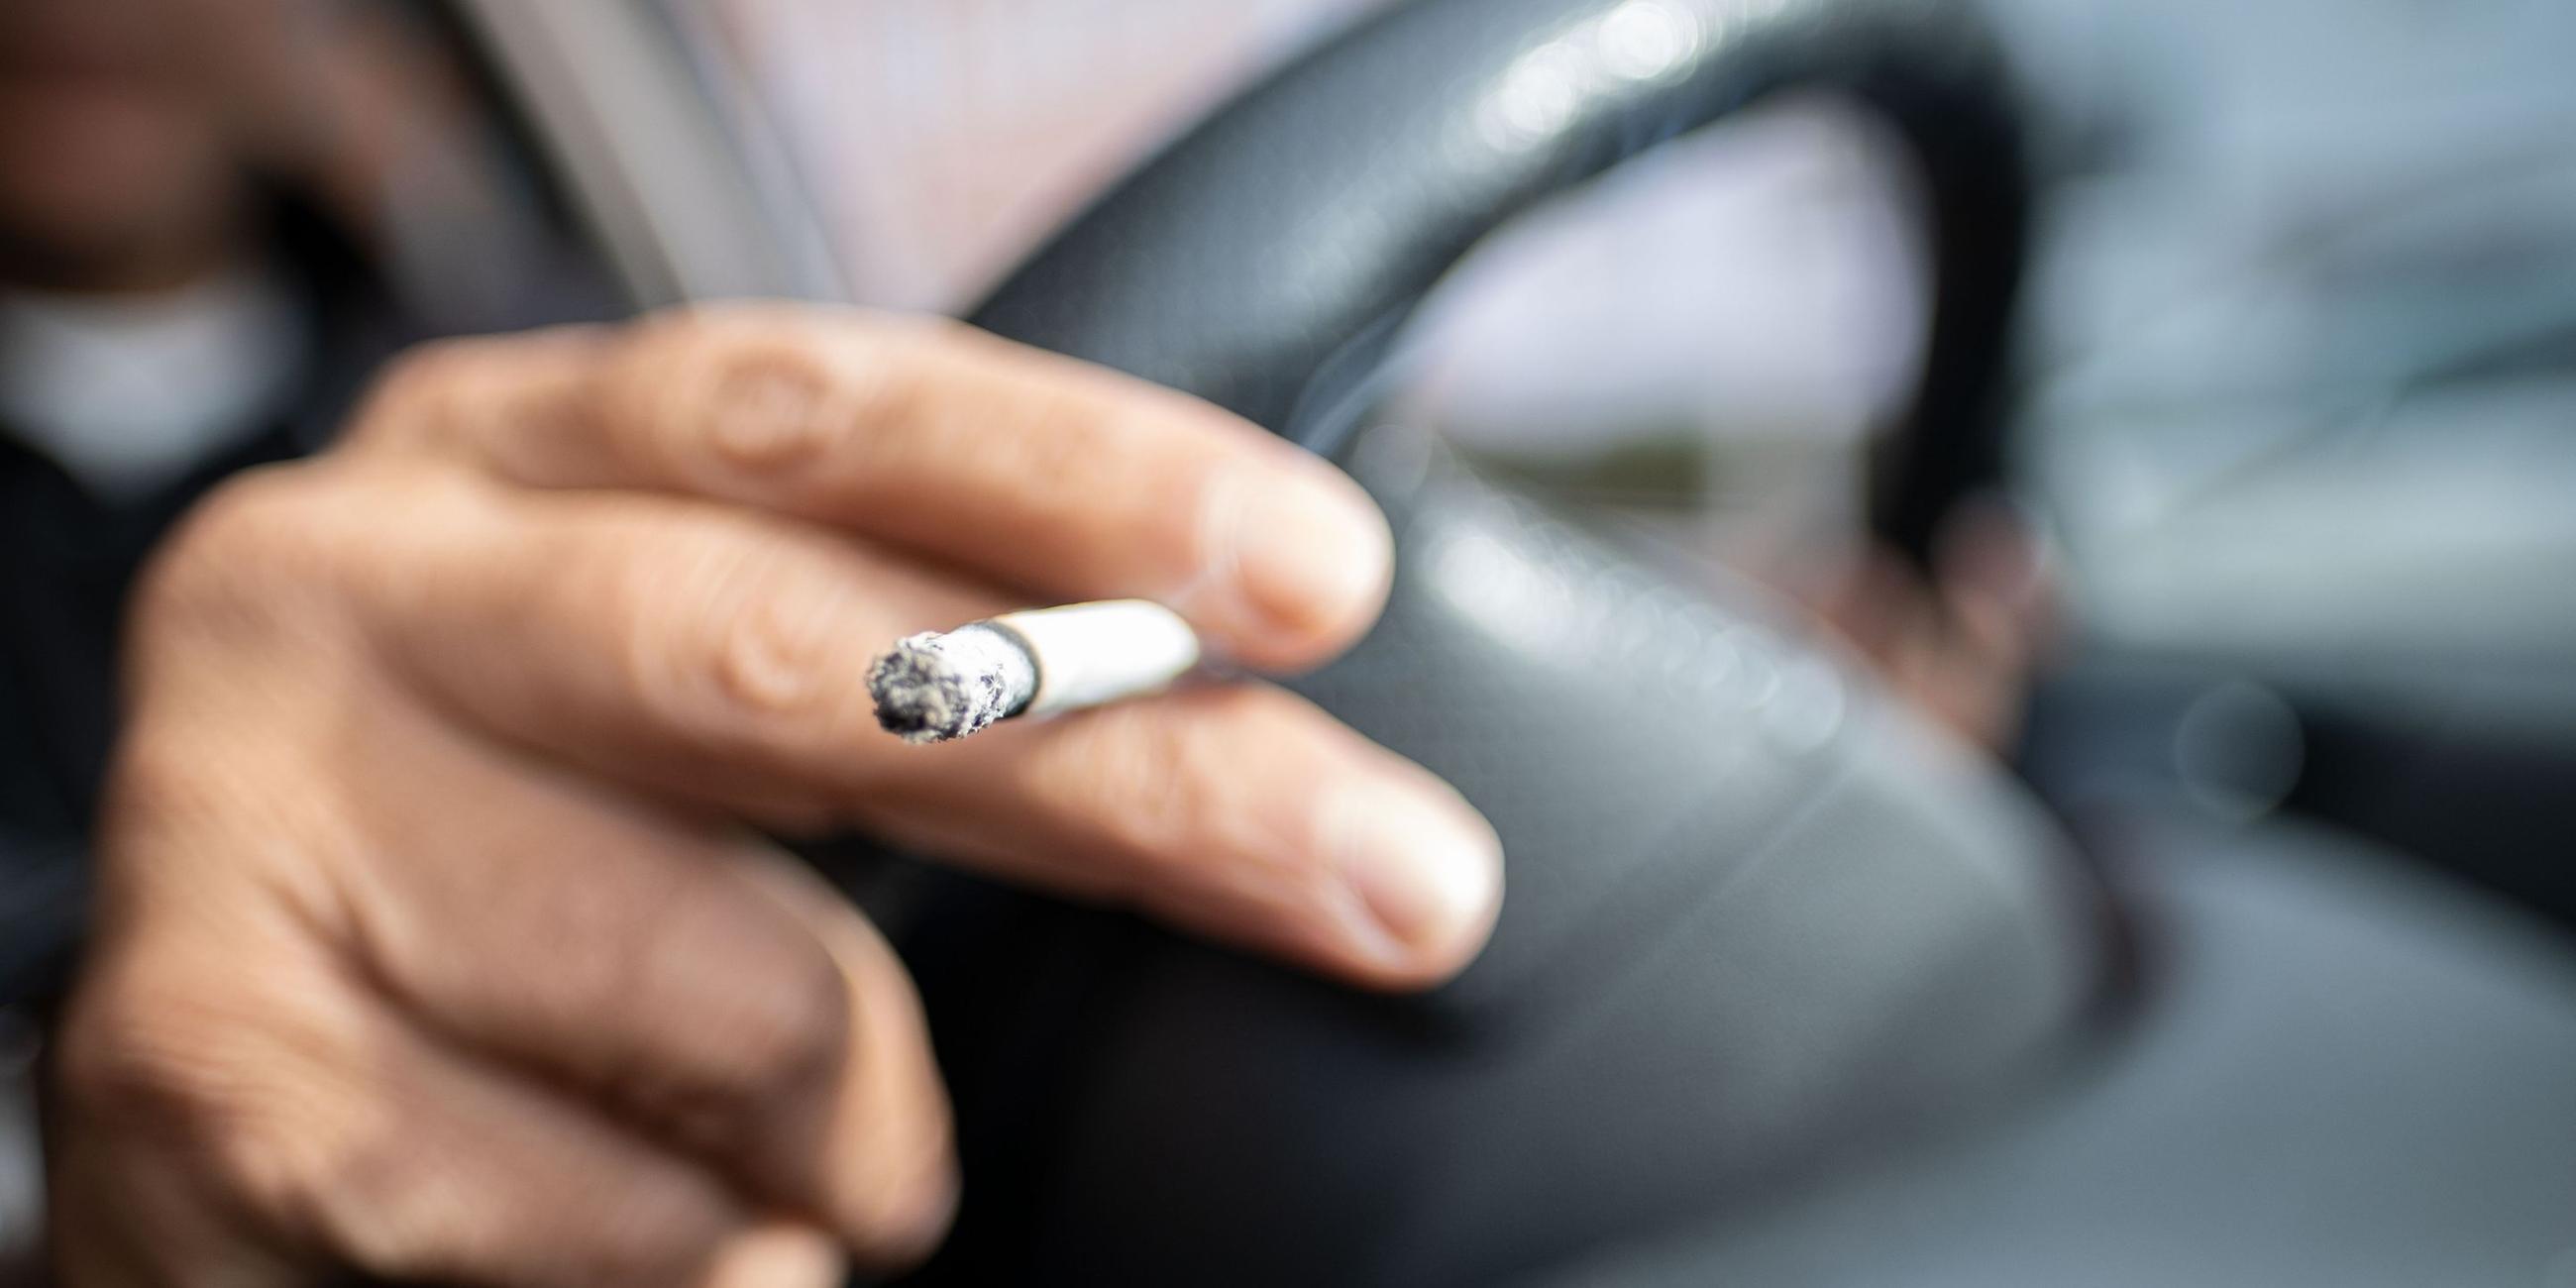 Das Rauchen im Auto soll verboten werden. Archivbild